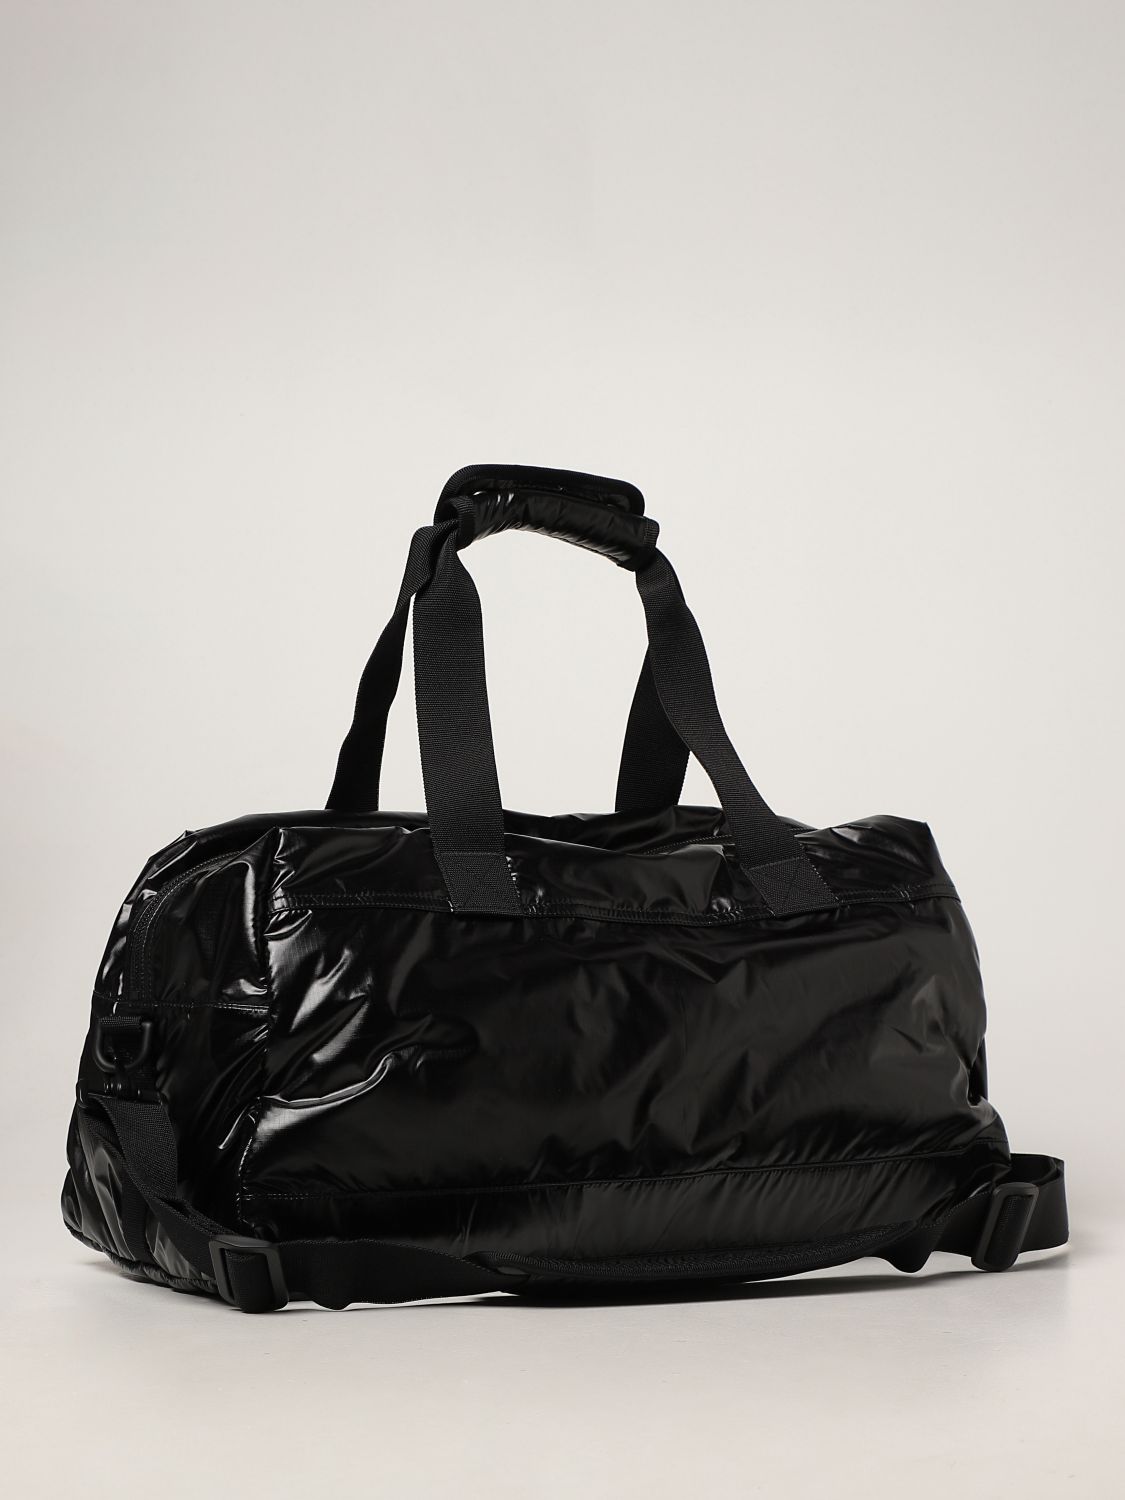 Travel bag Saint Laurent: Saint Laurent Nuxx Duffle bag in nylon black 3